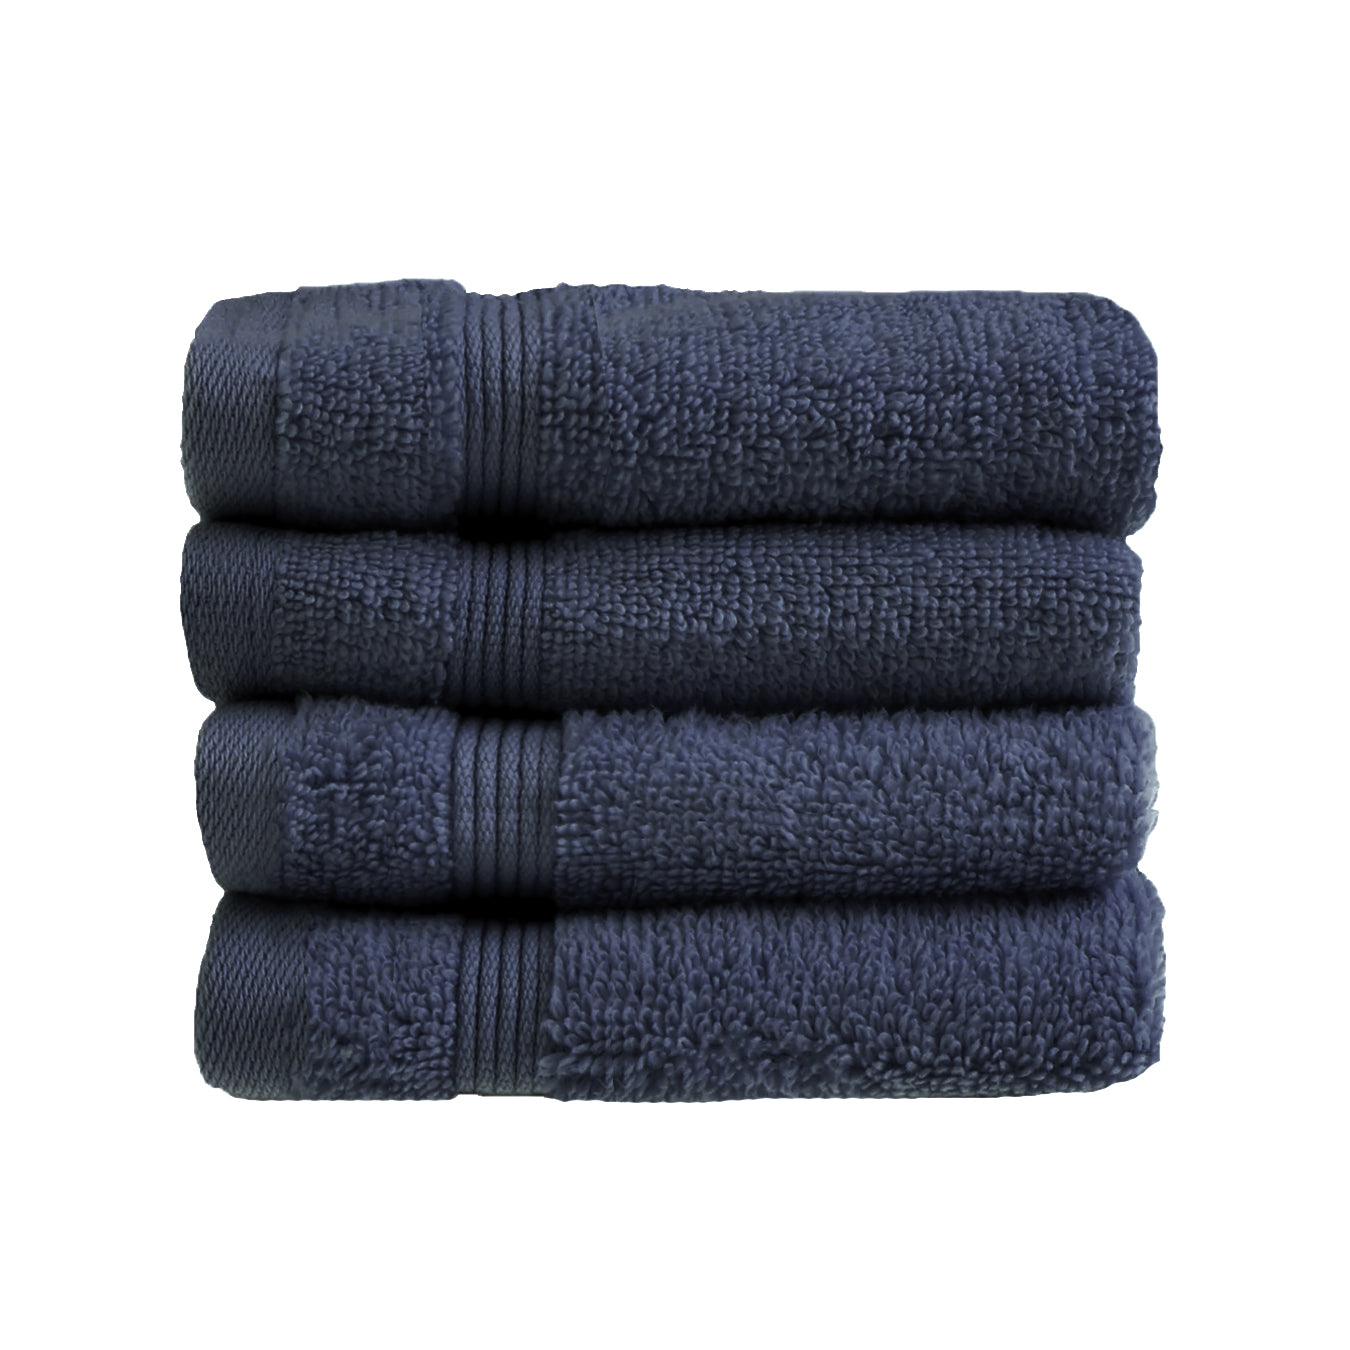 Navy Blue Egyptian Towels 4pk Face Cloths Set- Premium Zero Twist Cotton Flannels